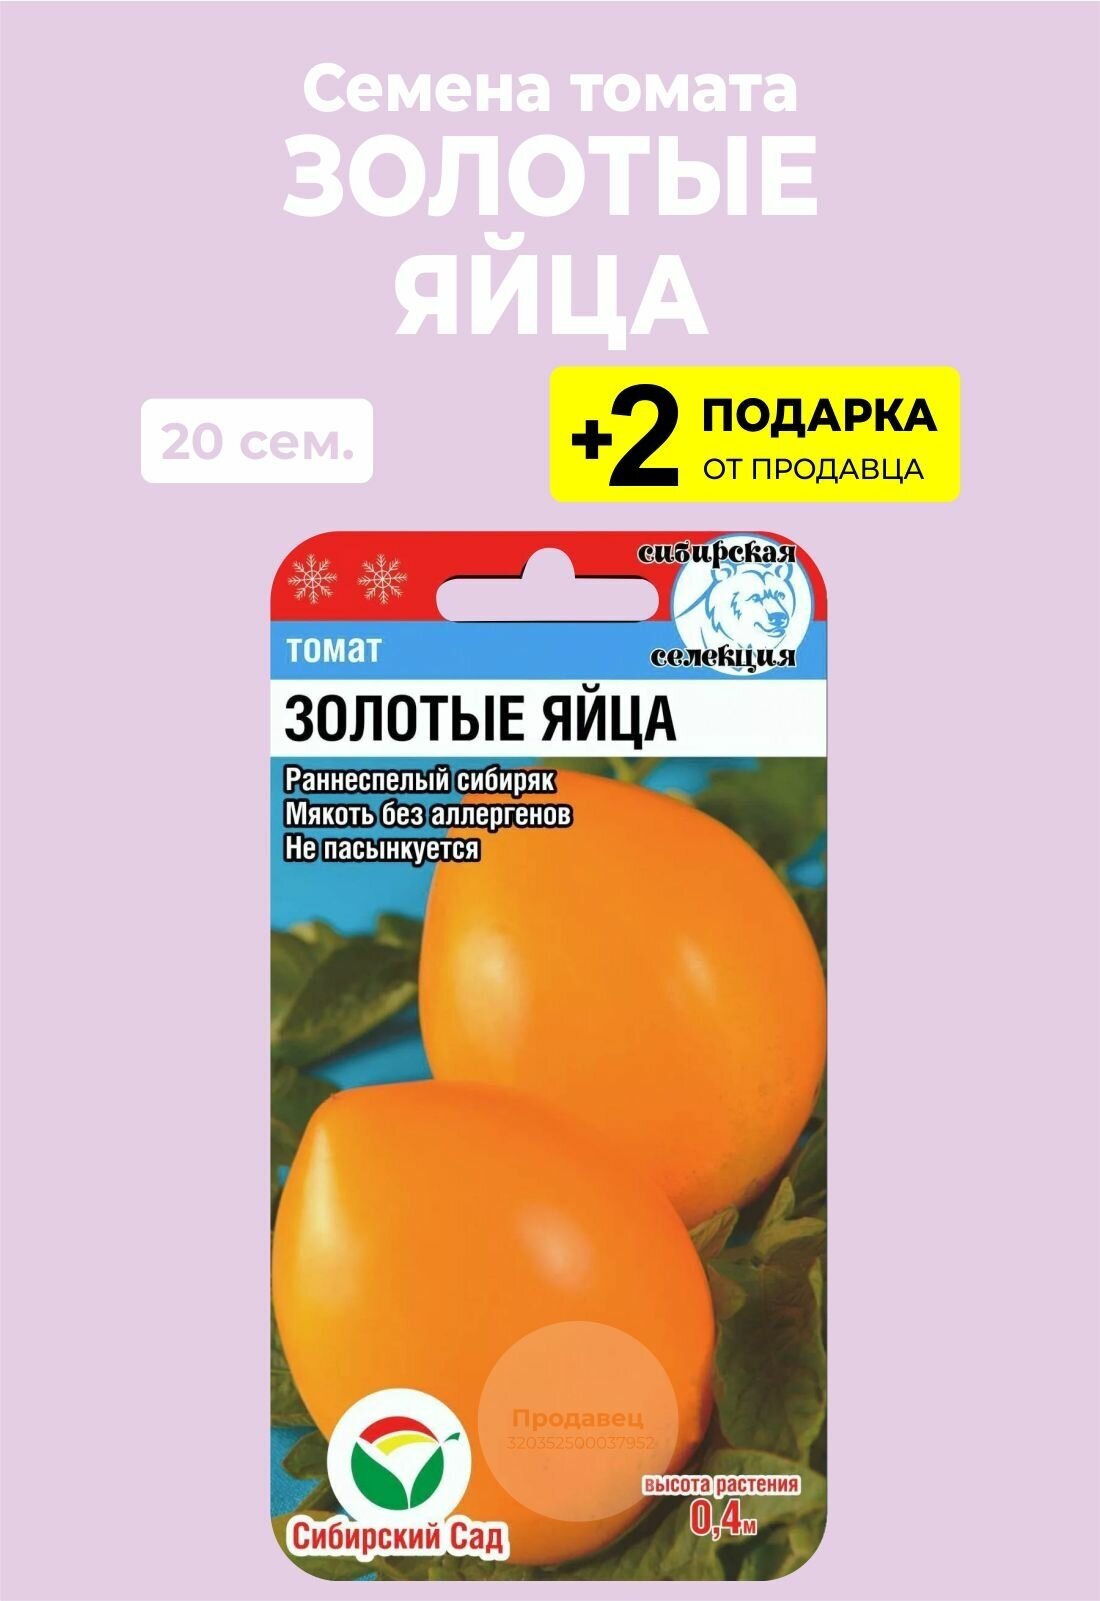 Семена Томат Золотые яйца, 20 сем. + 2 Подарка — купить в  интернет-магазине по низкой цене на Яндекс Маркете